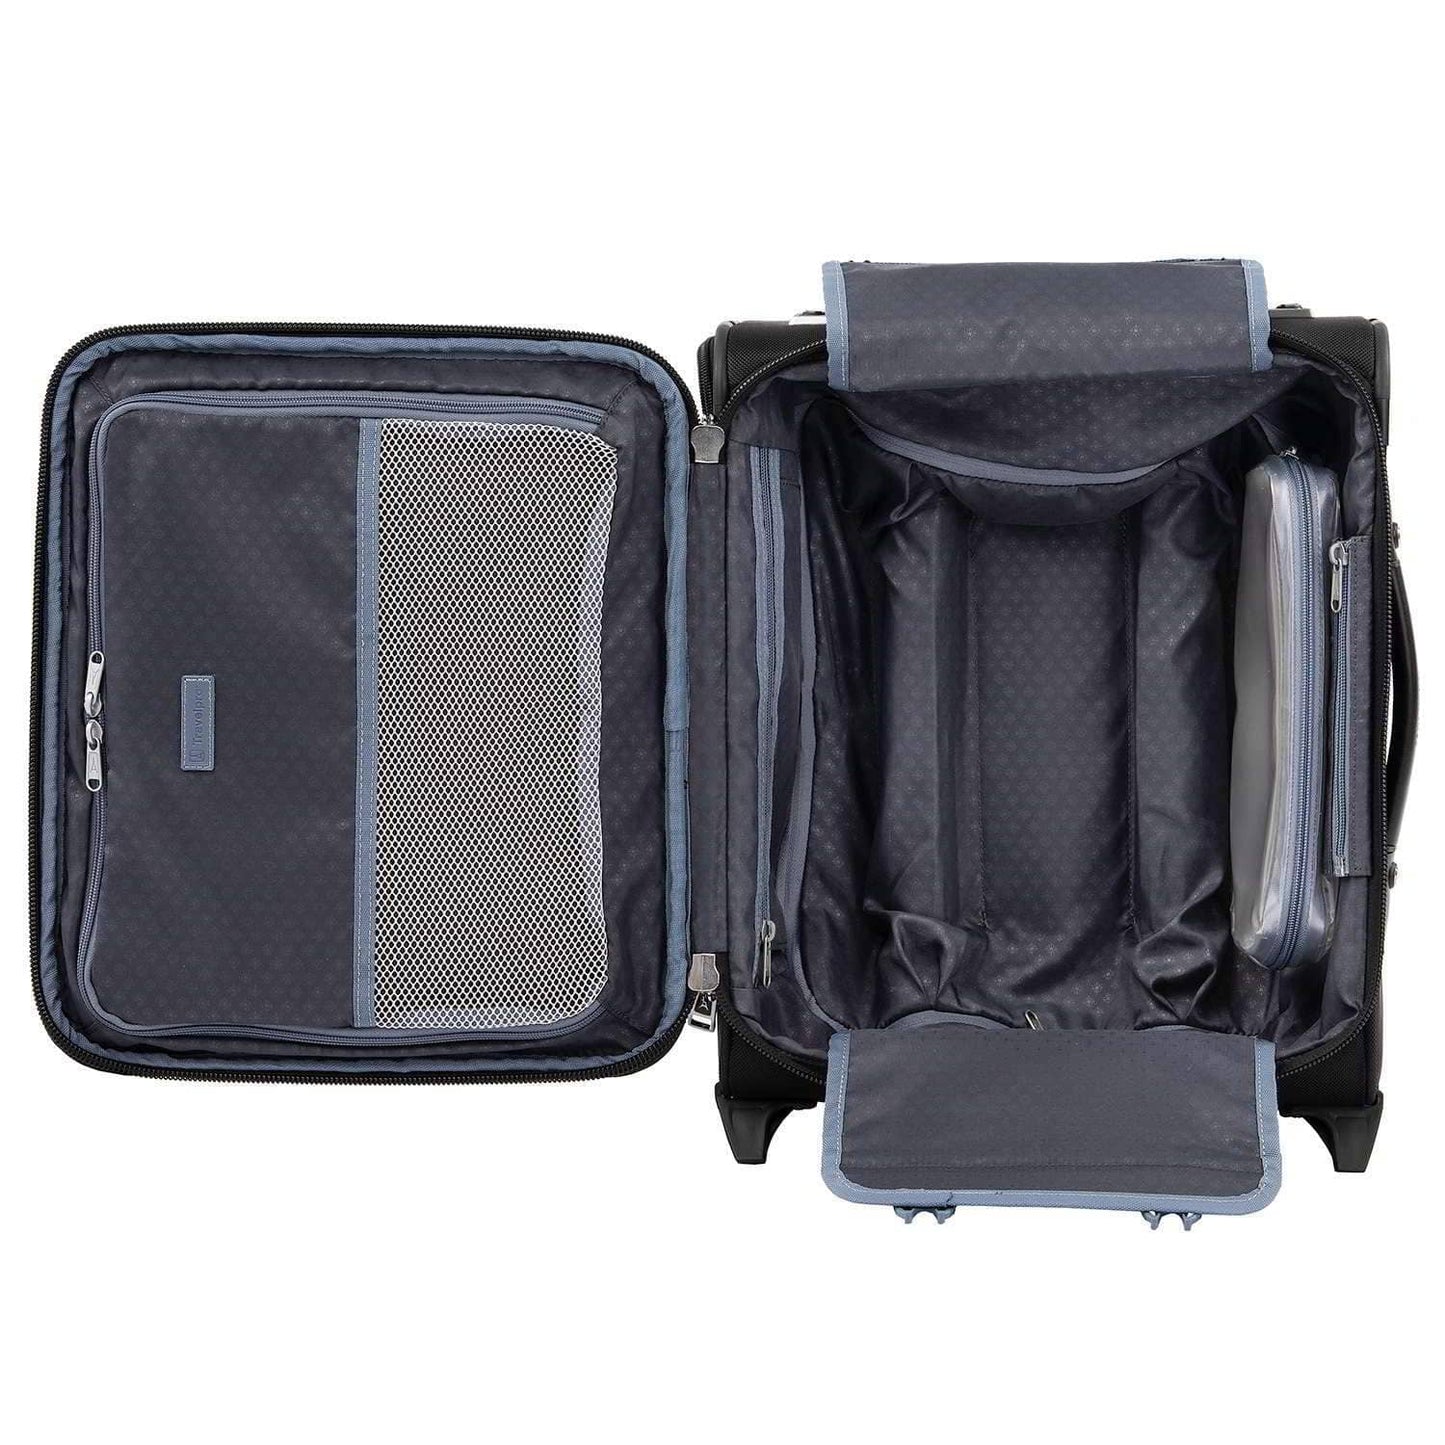 Travelpro Platinum® Elite Rollaboard® regional de equipaje de mano con lados blandos de 18” y 2 ruedas - 4091818